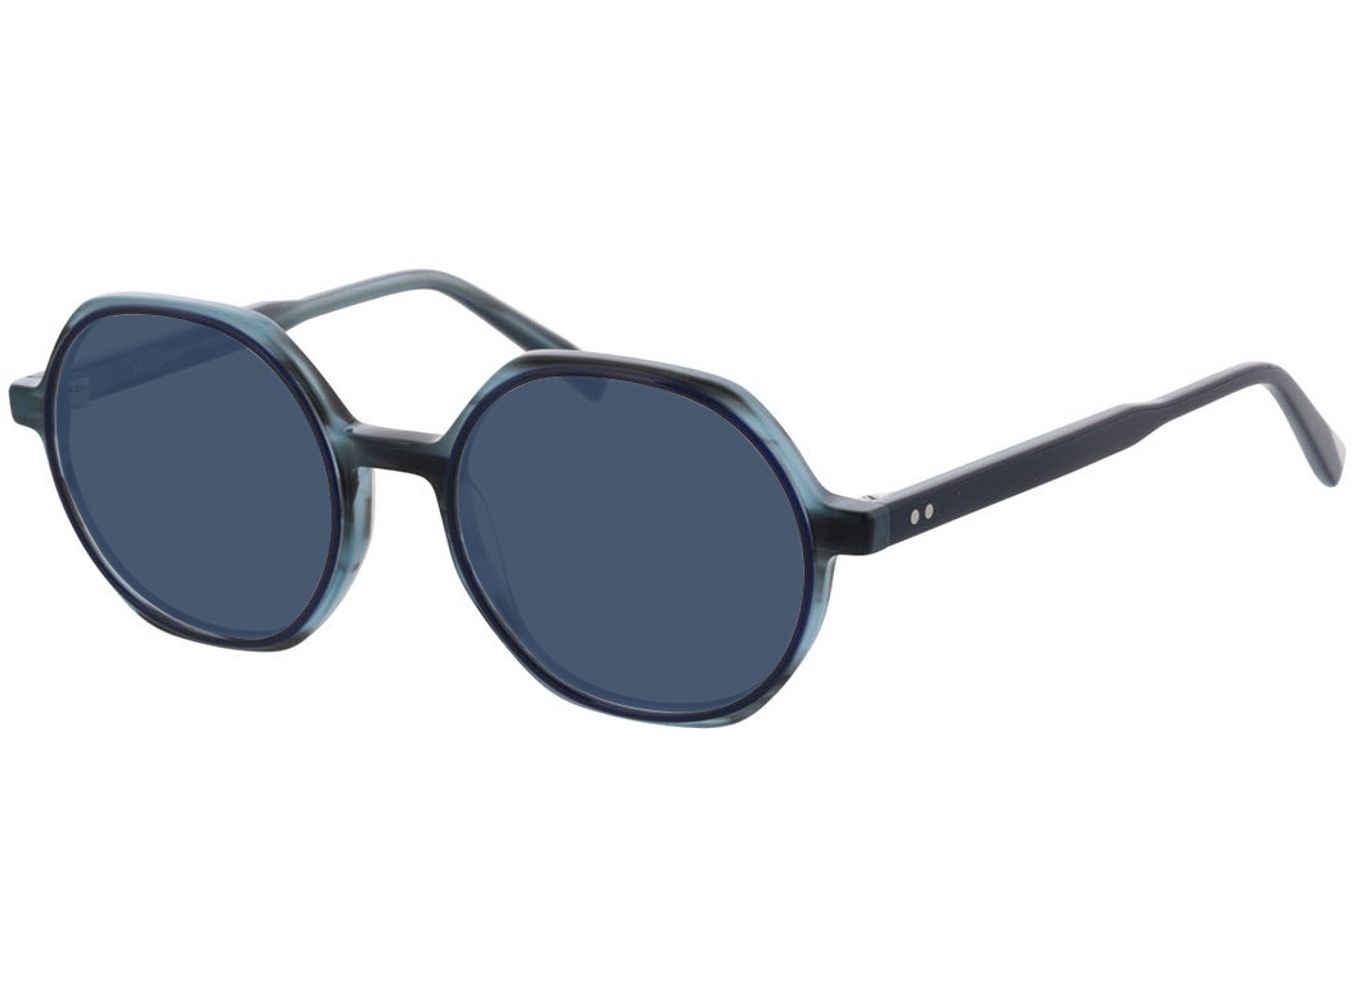 Toledo - blau Sonnenbrille ohne Sehstärke, Vollrand, geometric von Brille24 Collection